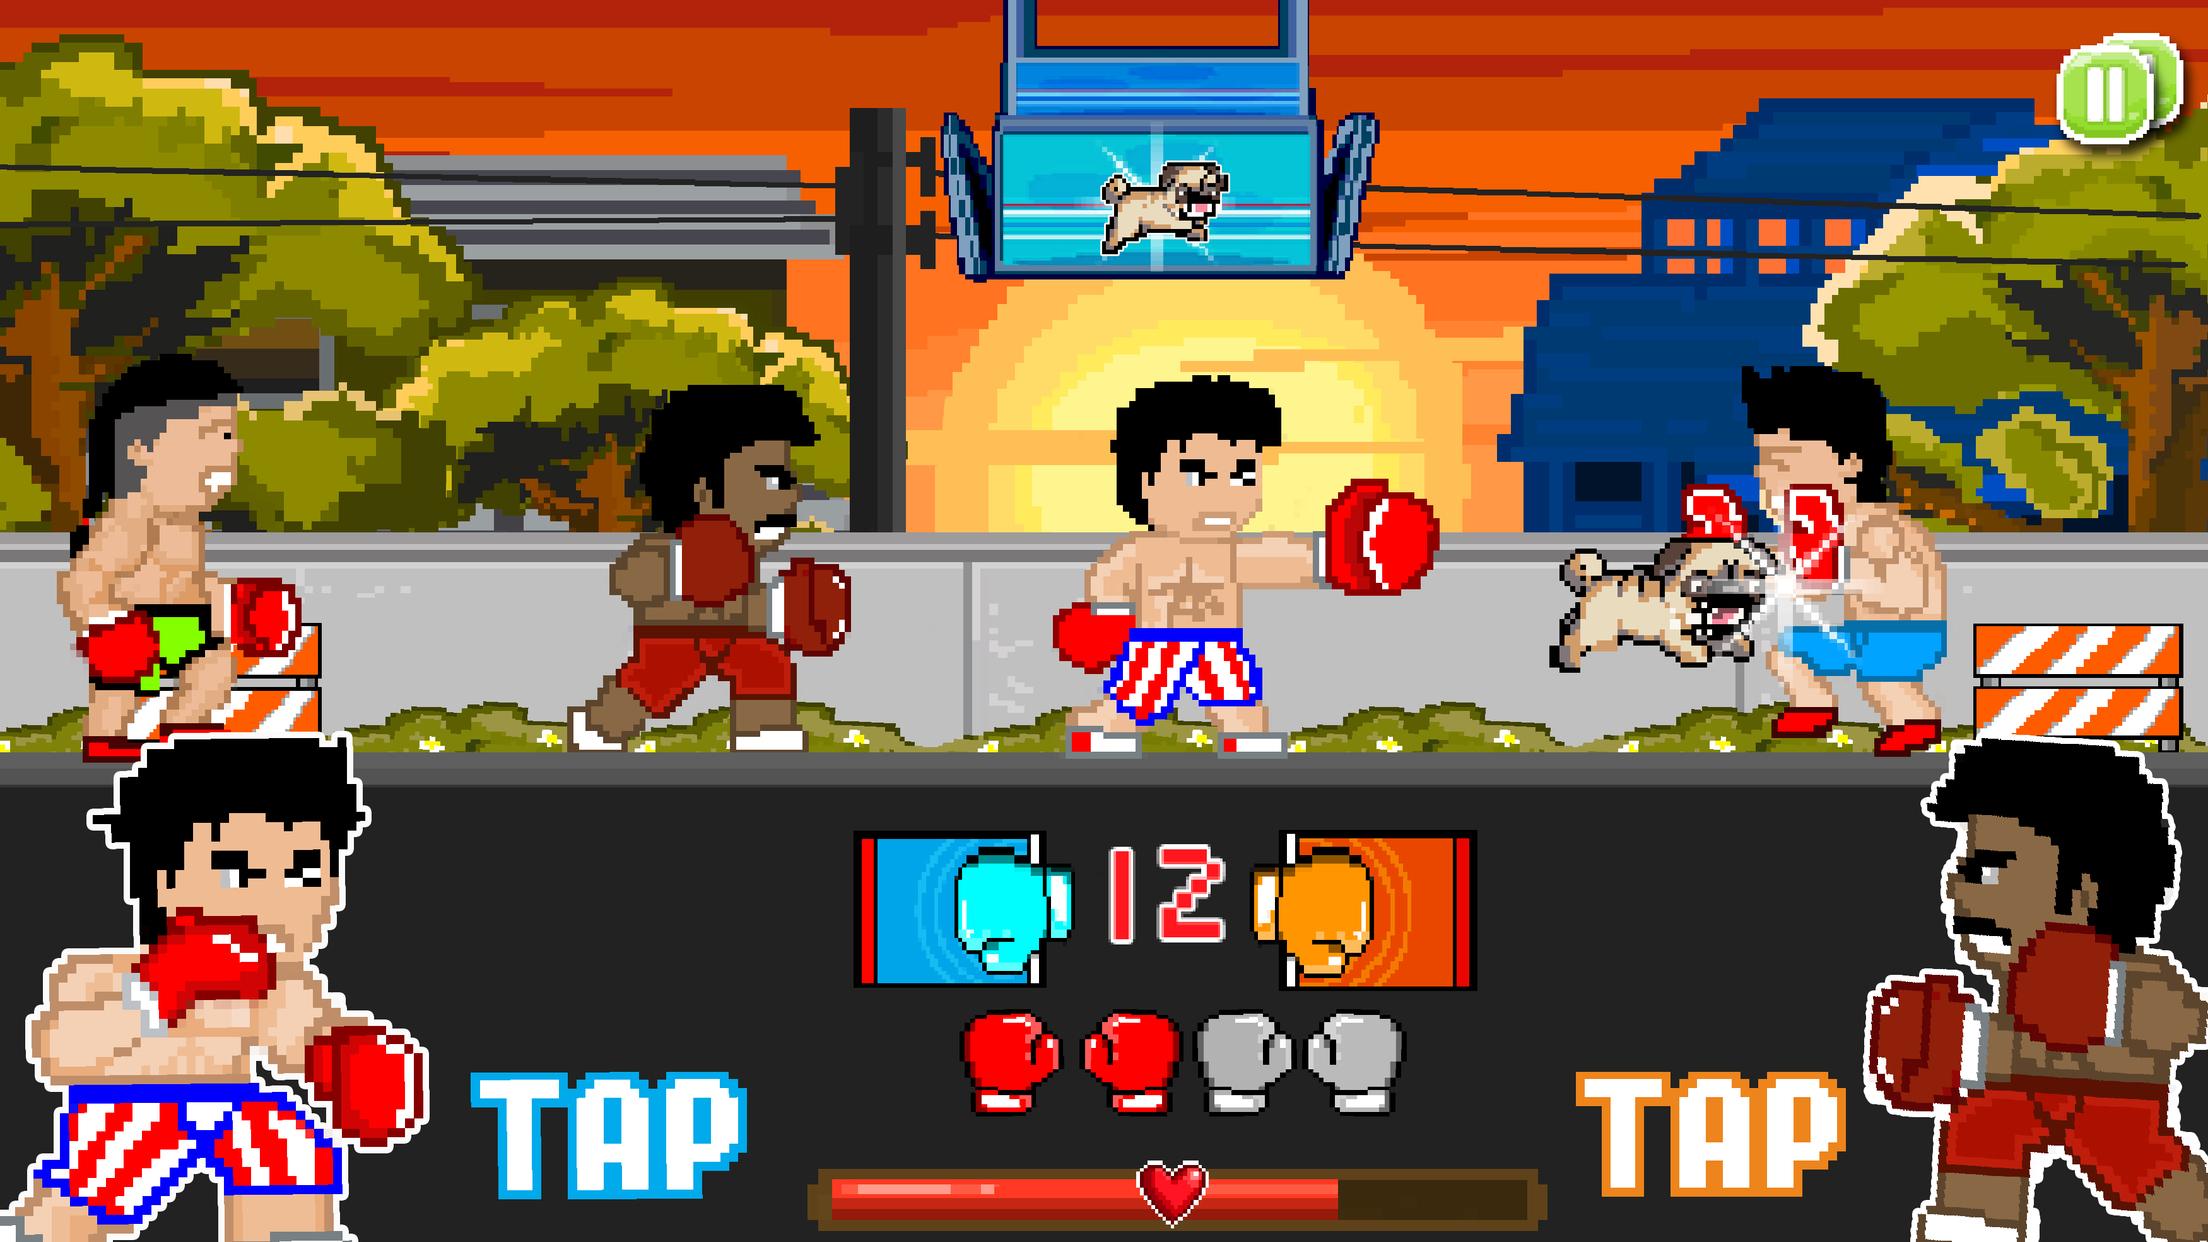 Игры бить головой. Пиксельная игра про бокс. Игра супер бойцы. Игра про боксера Punch. 8 Битная игра про боксера.